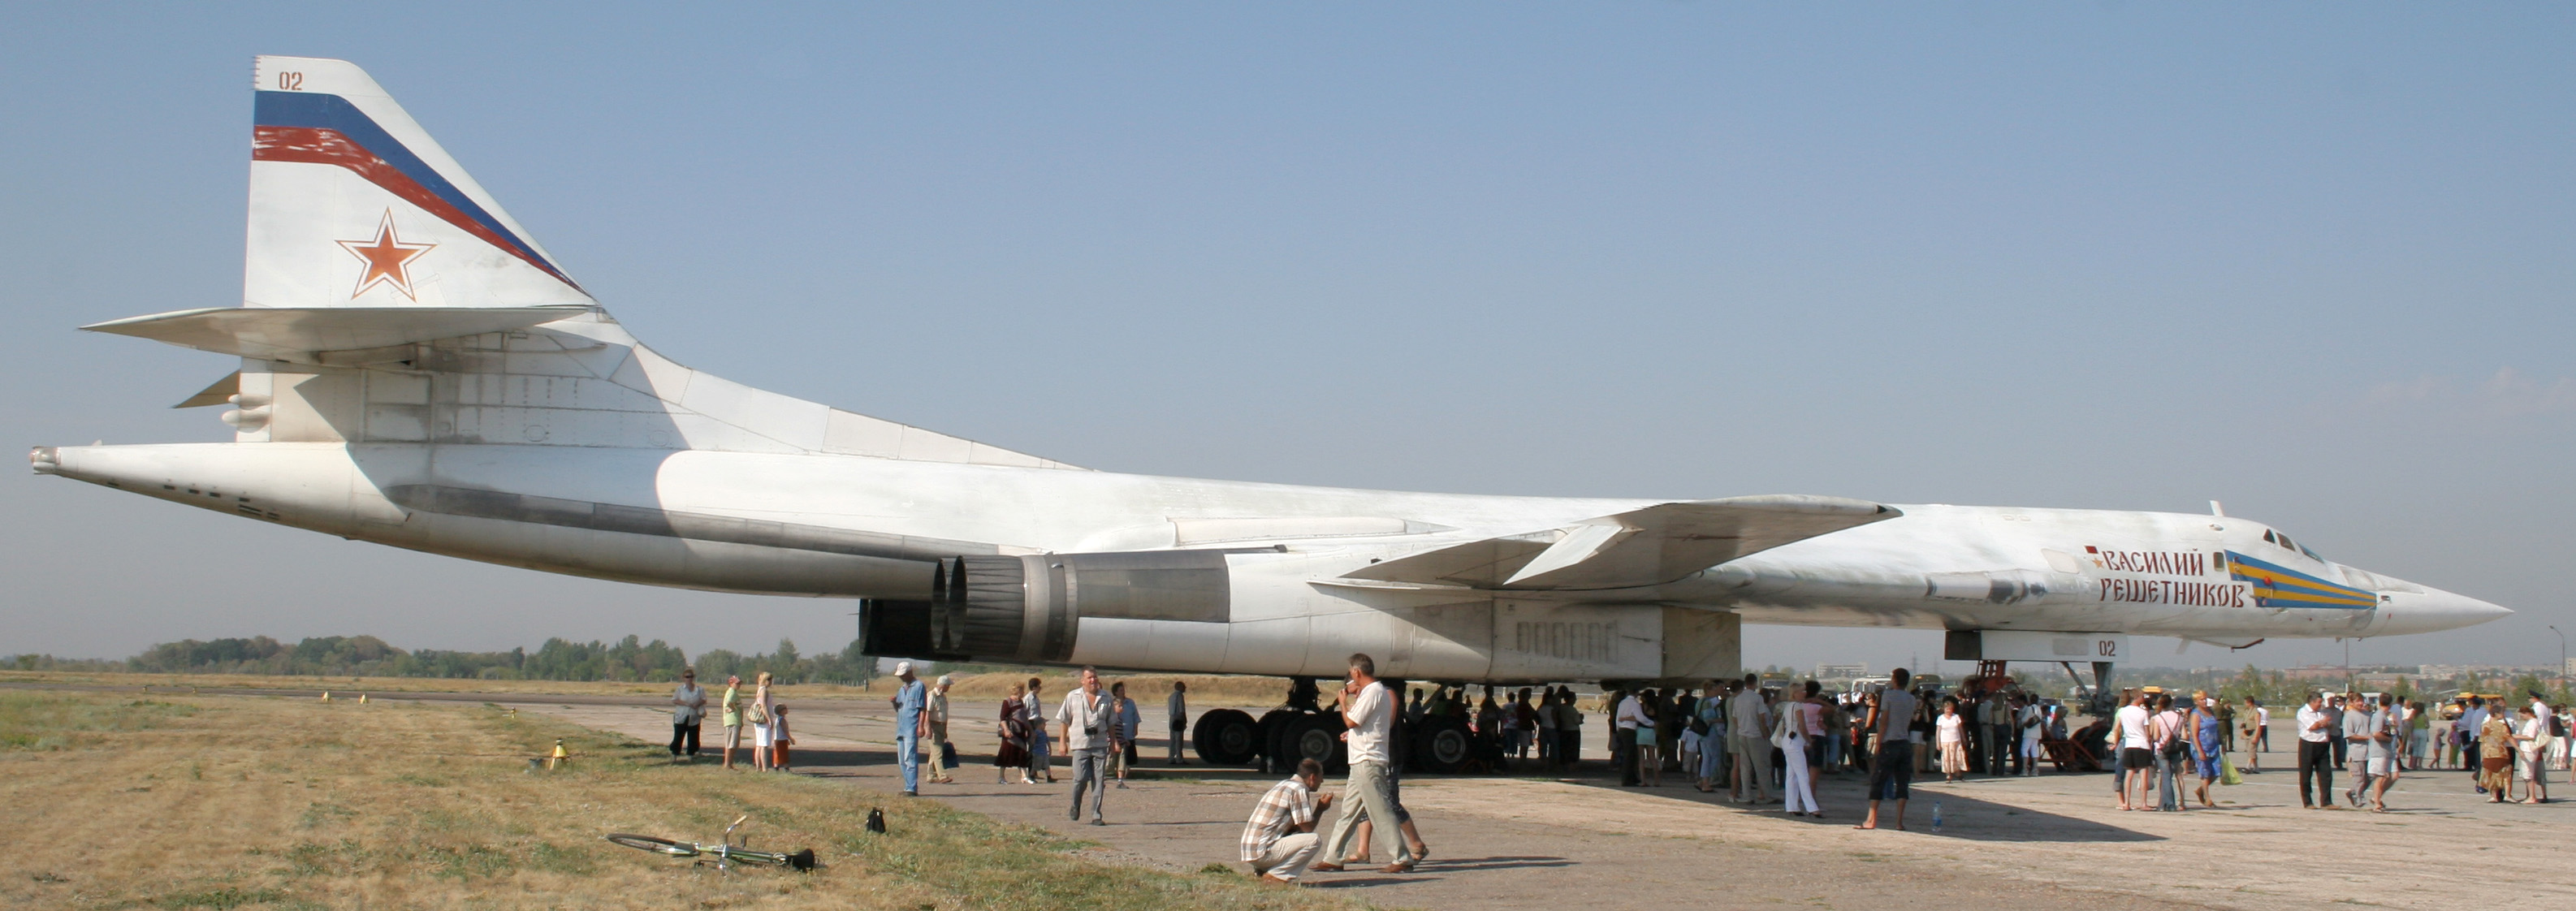 Ту 160 сверхзвуковой характеристики. Белый лебедь самолет ту 160. Ту-160 сверхзвуковой самолёт. Ту-160 белый лебедь Решетников.